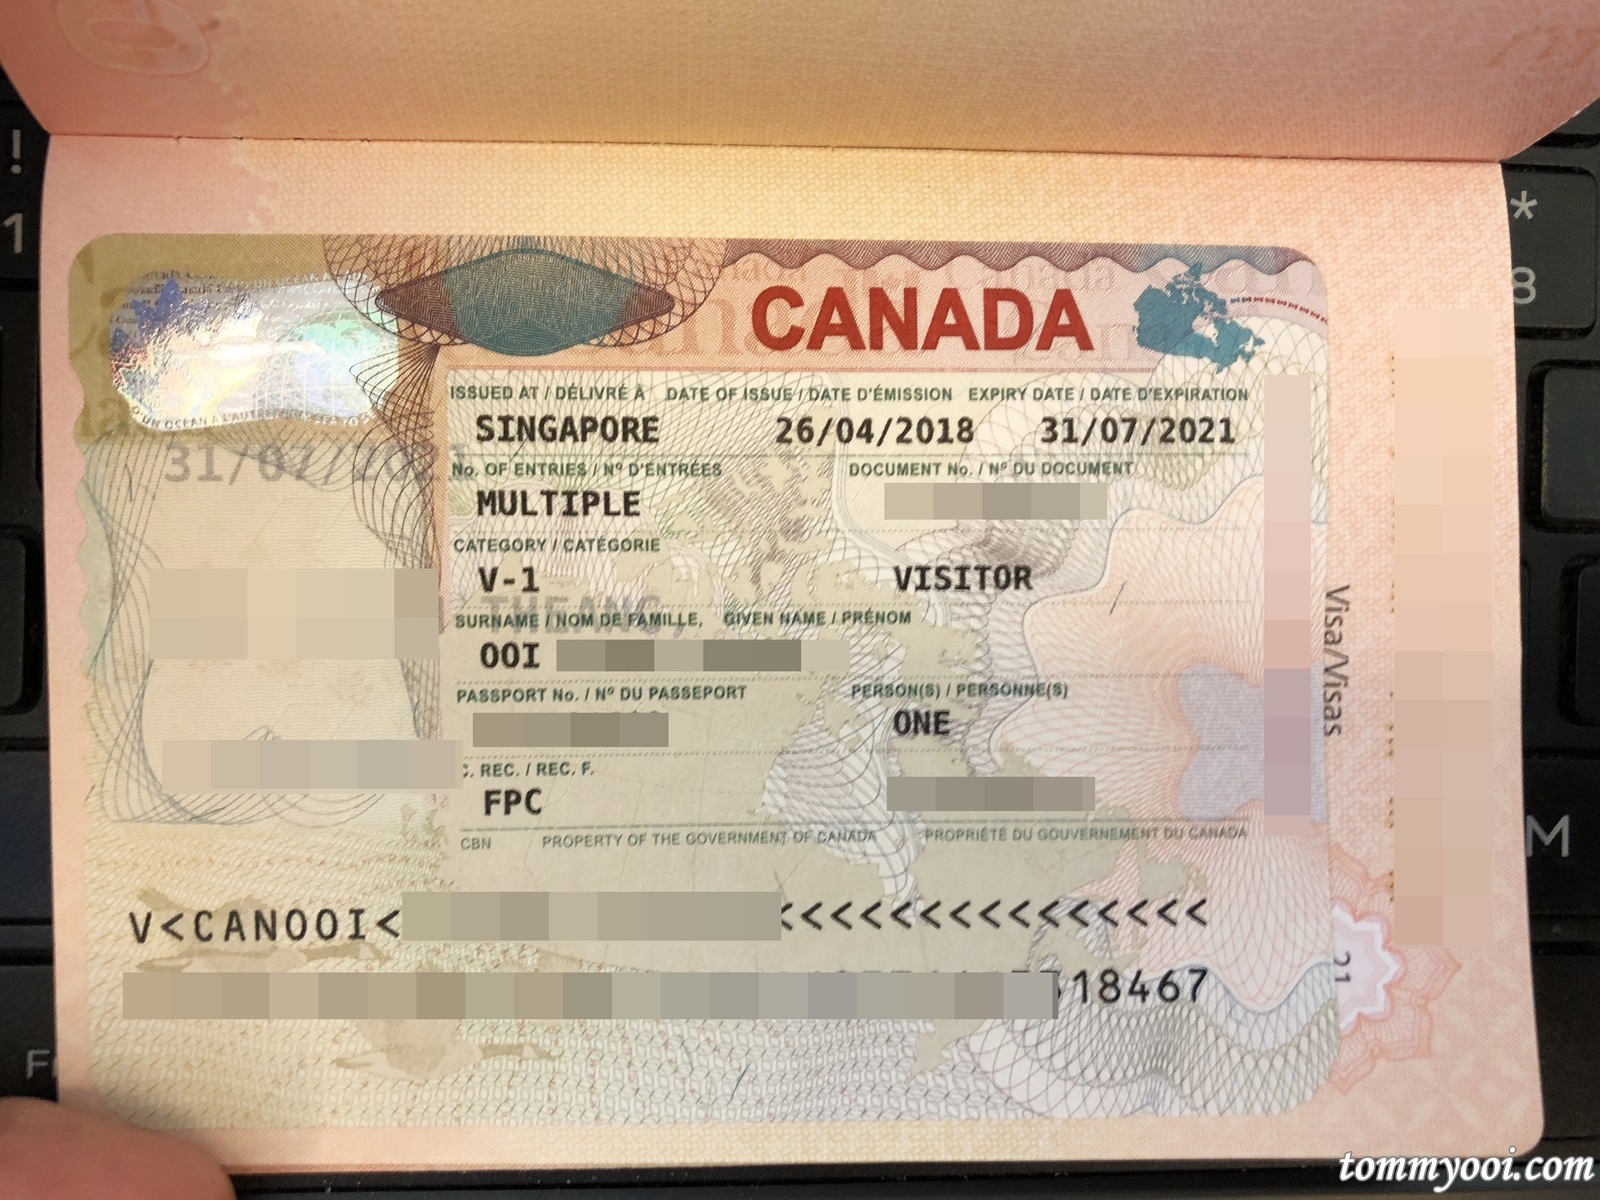 Visa Canada - Hướng Dẫn Đăng Ký, Cách Làm Và Điều Kiện Để Có Visa Canada